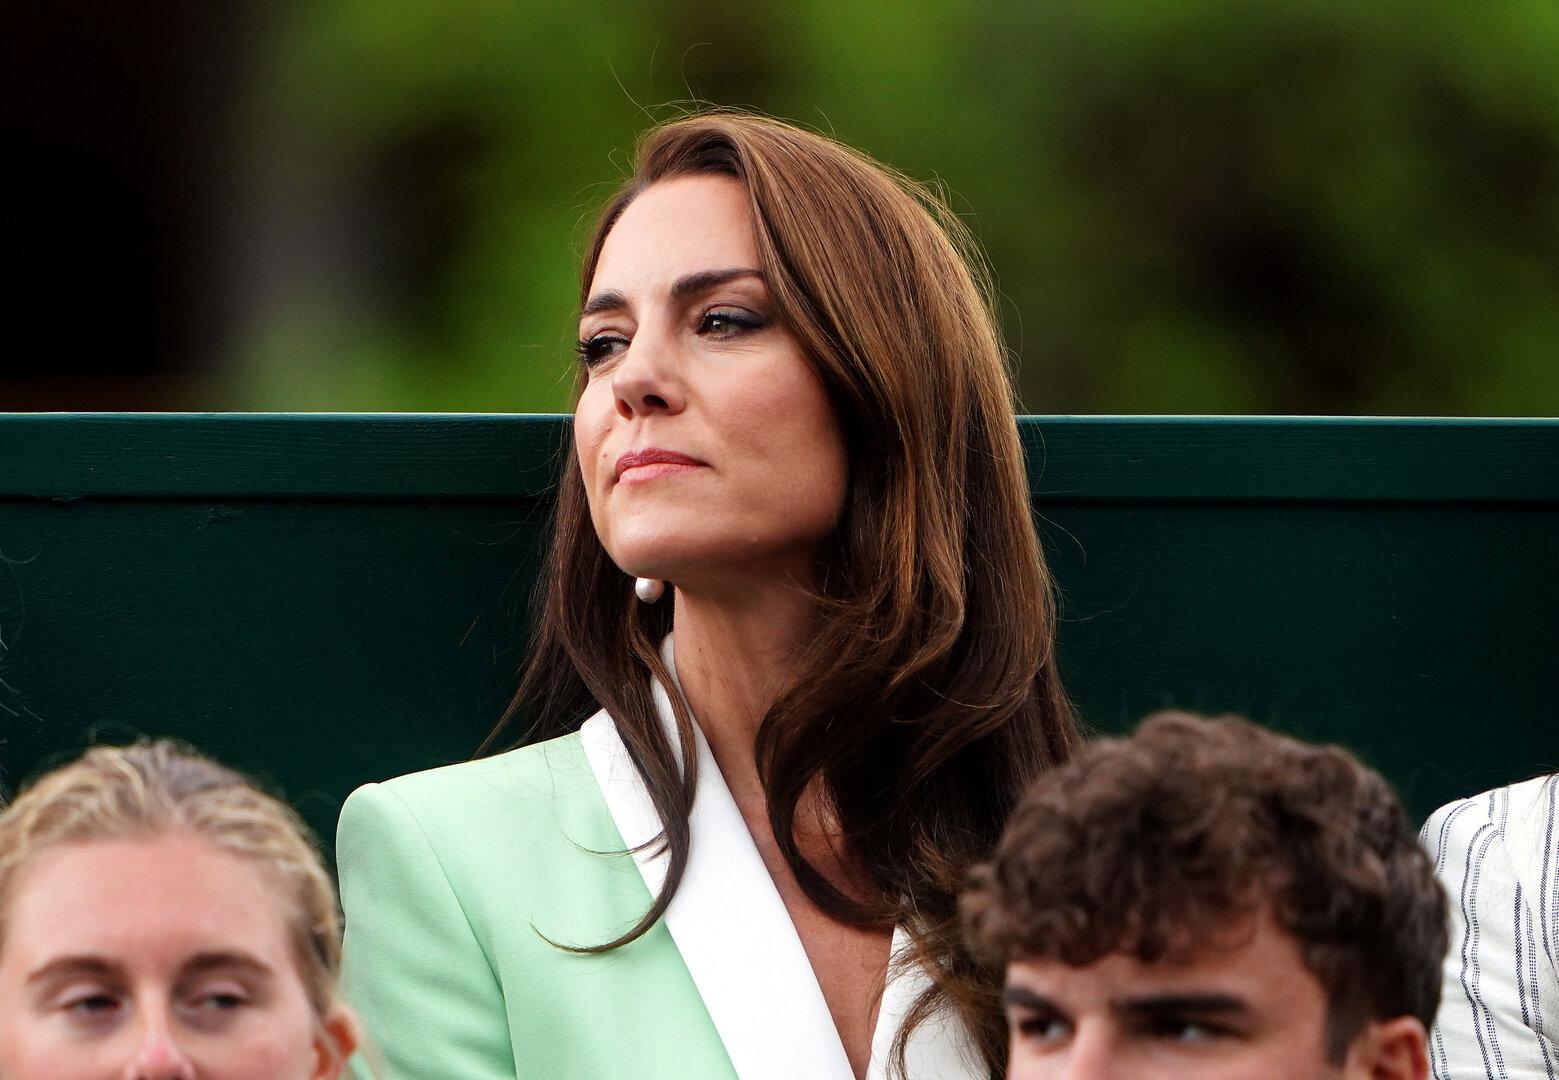 Warum Prinzessin Kate ihr großes Hobby Tennis aufgab: Familiäre Hürde